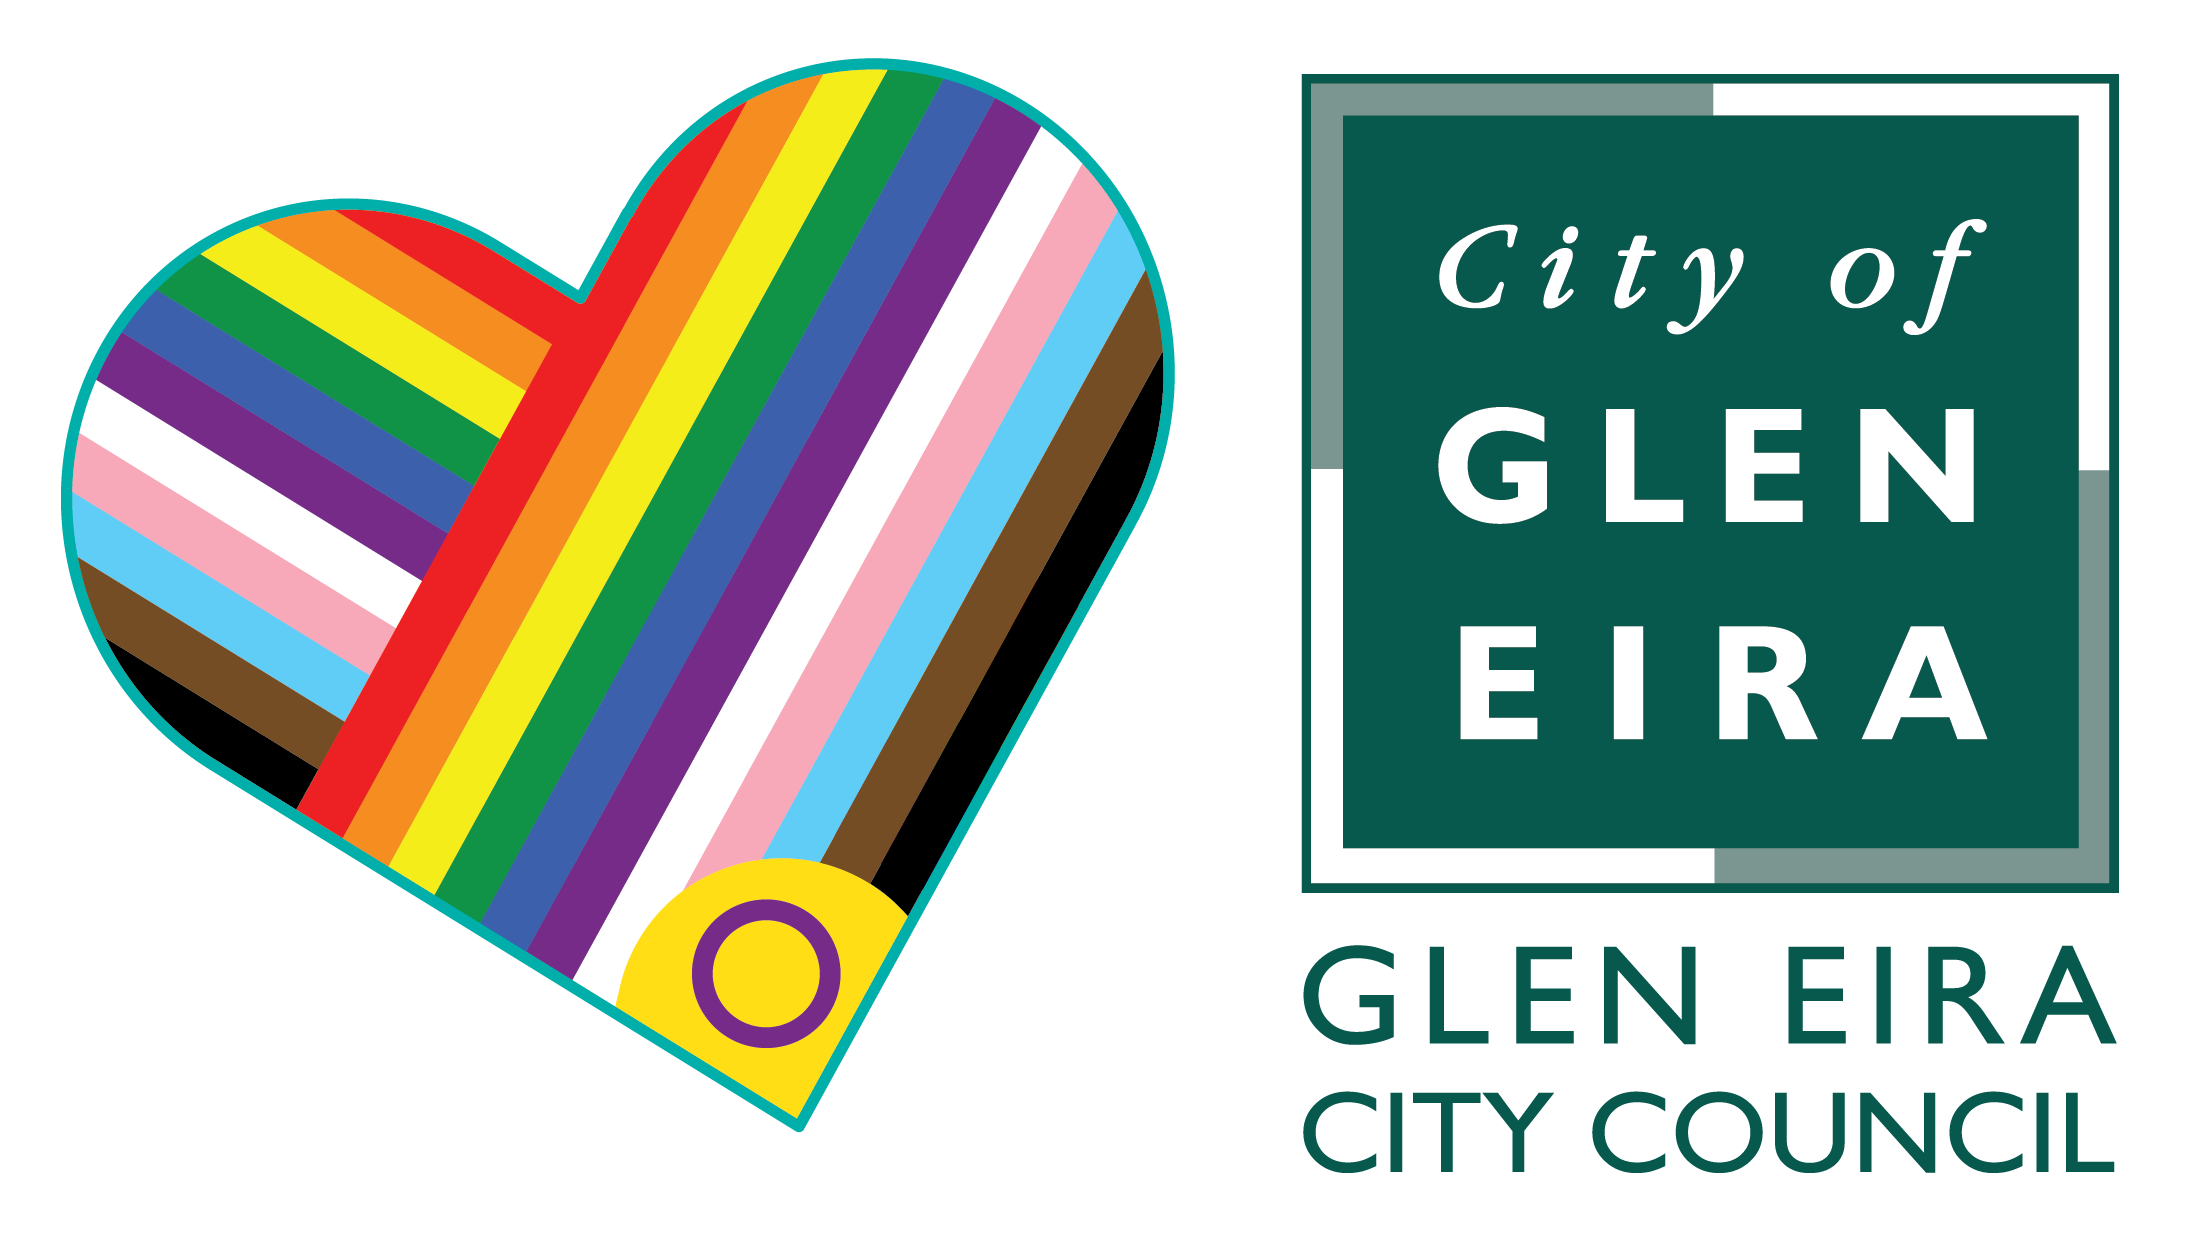 Pride and Glen Eira City Council logo